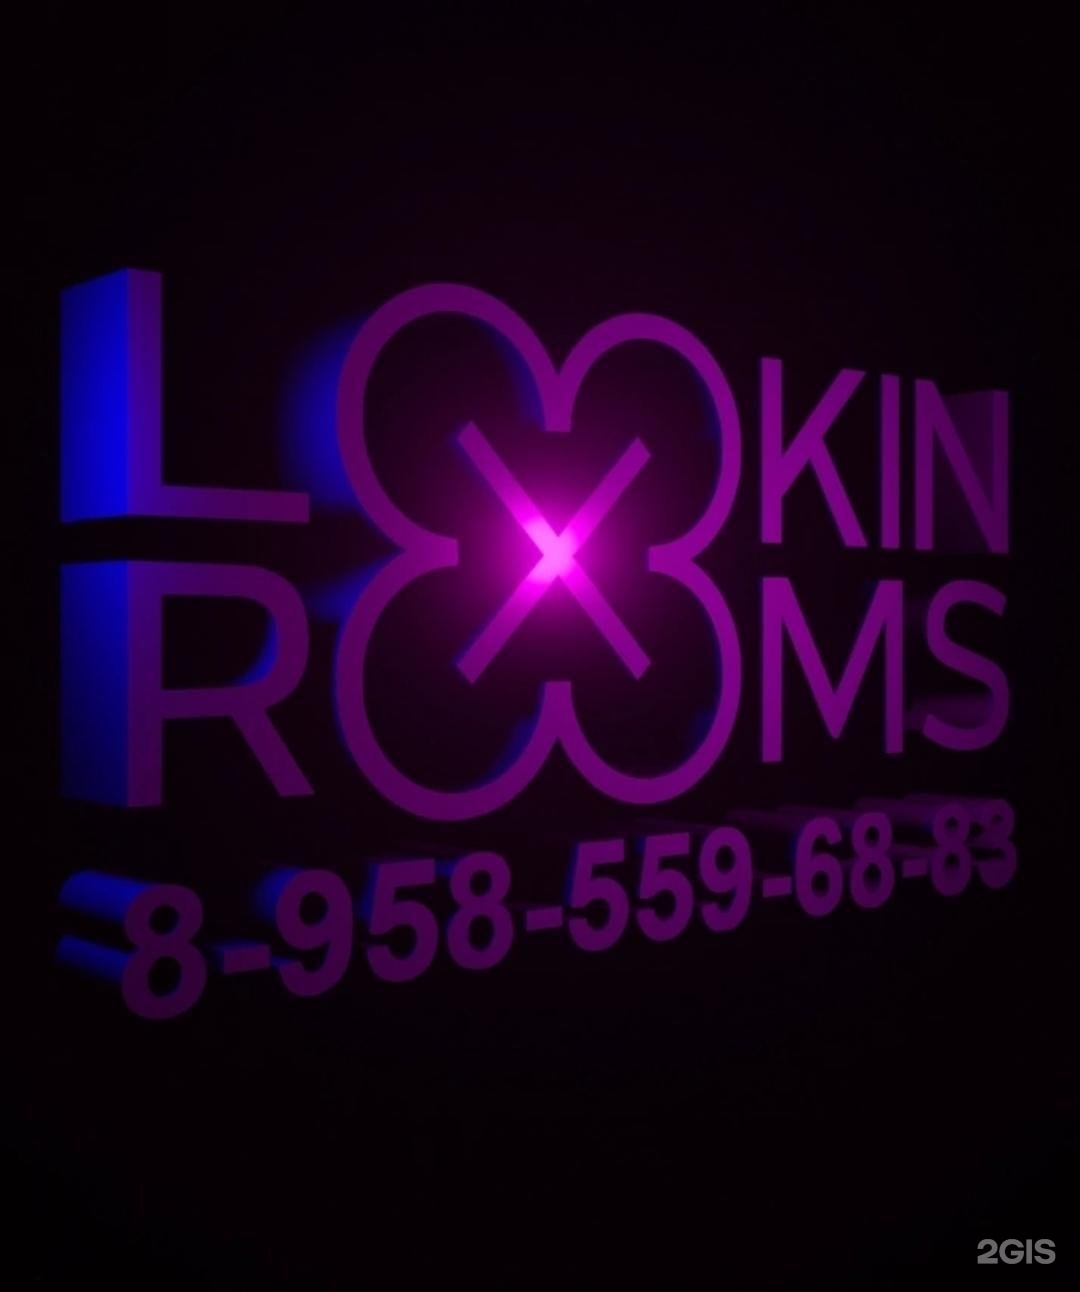 Тверская 18 lookin rooms. Lookin Rooms Тверская 18к1. Lookin Rooms лого. Lookin Rooms клуб Tokio Hotel. Lookin Rooms Абакан.